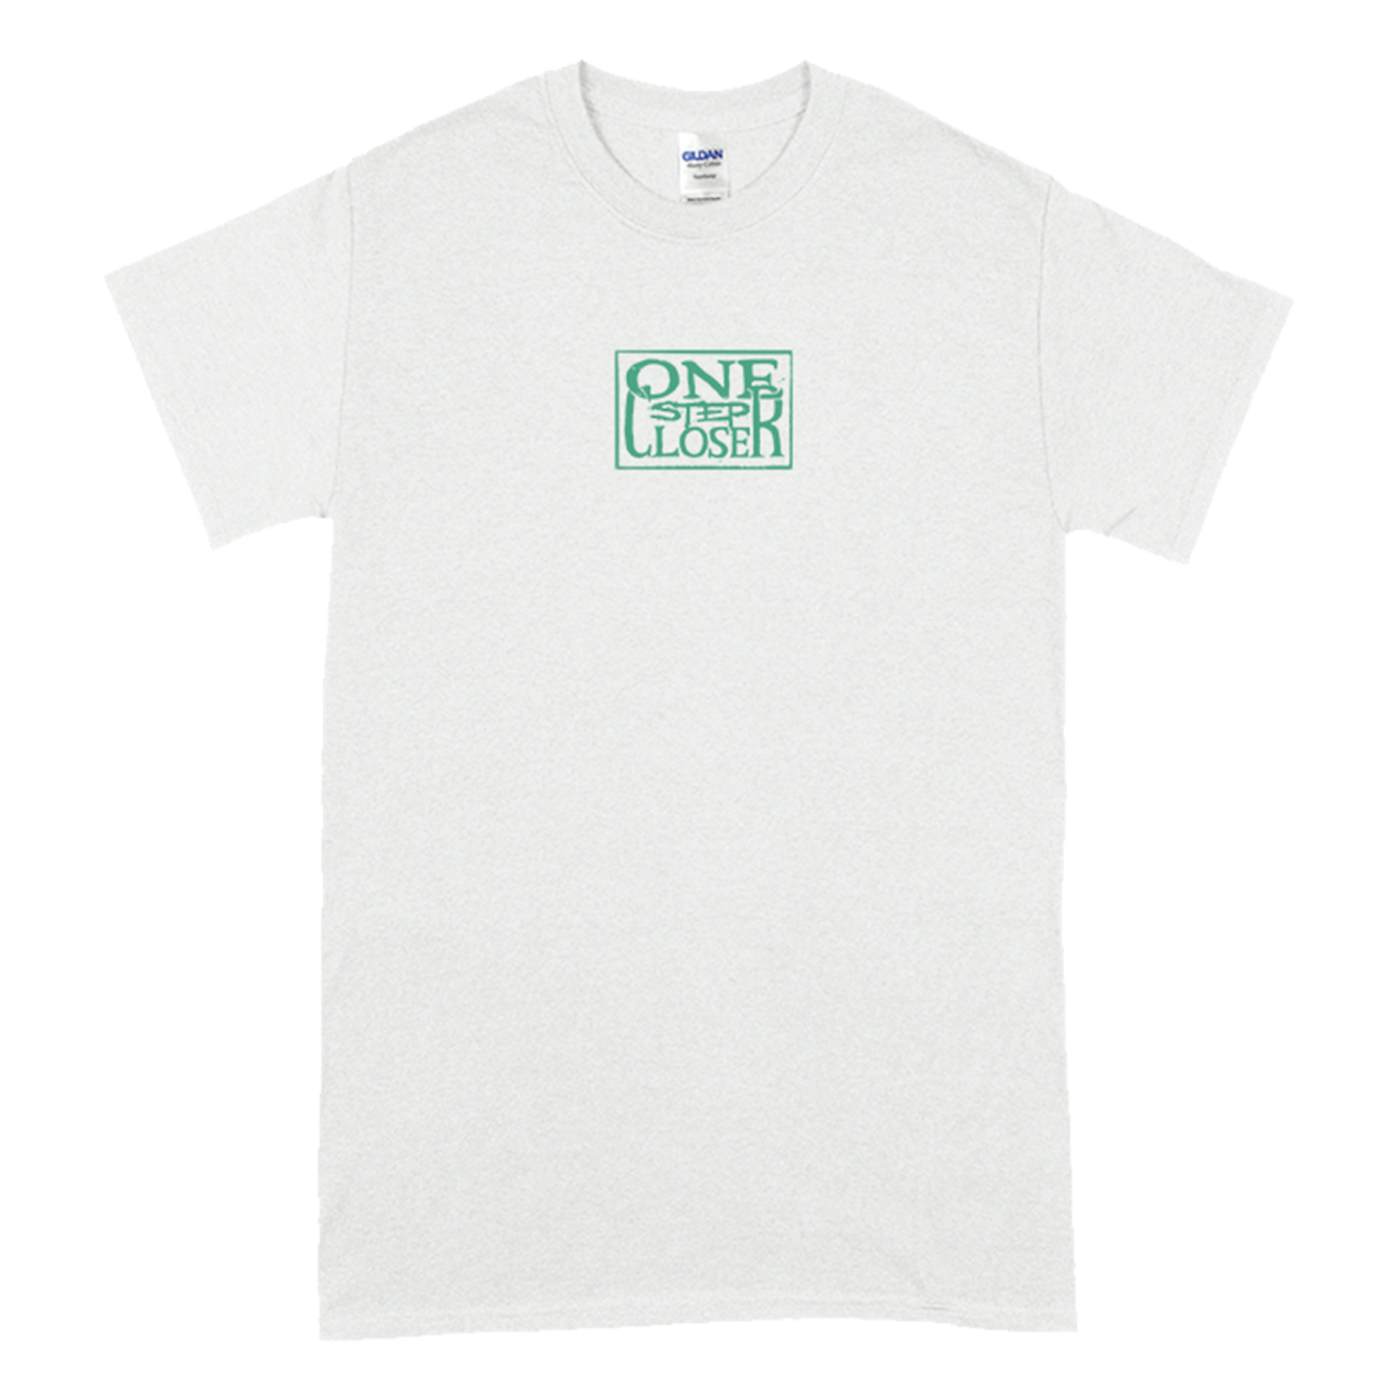 One Step Closer "Logo Tour" T-Shirt